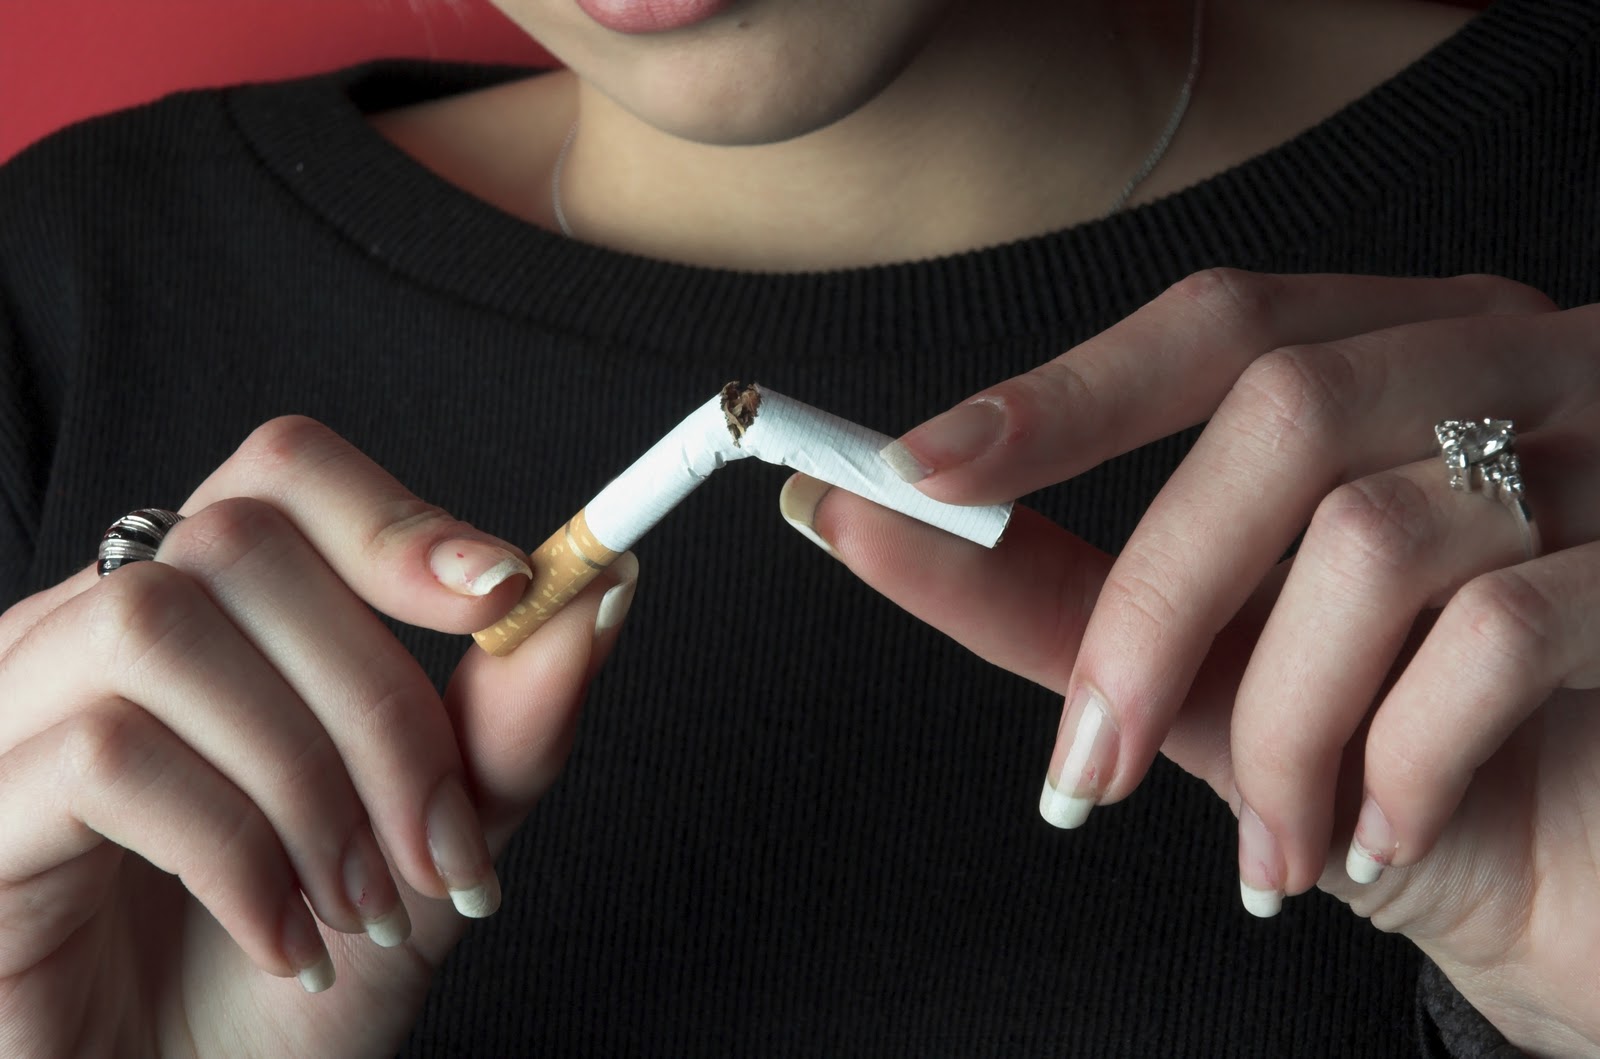 Αυστρία: Το 70% κατά της απελευθέρωσης καπνίσματος στην εστίαση